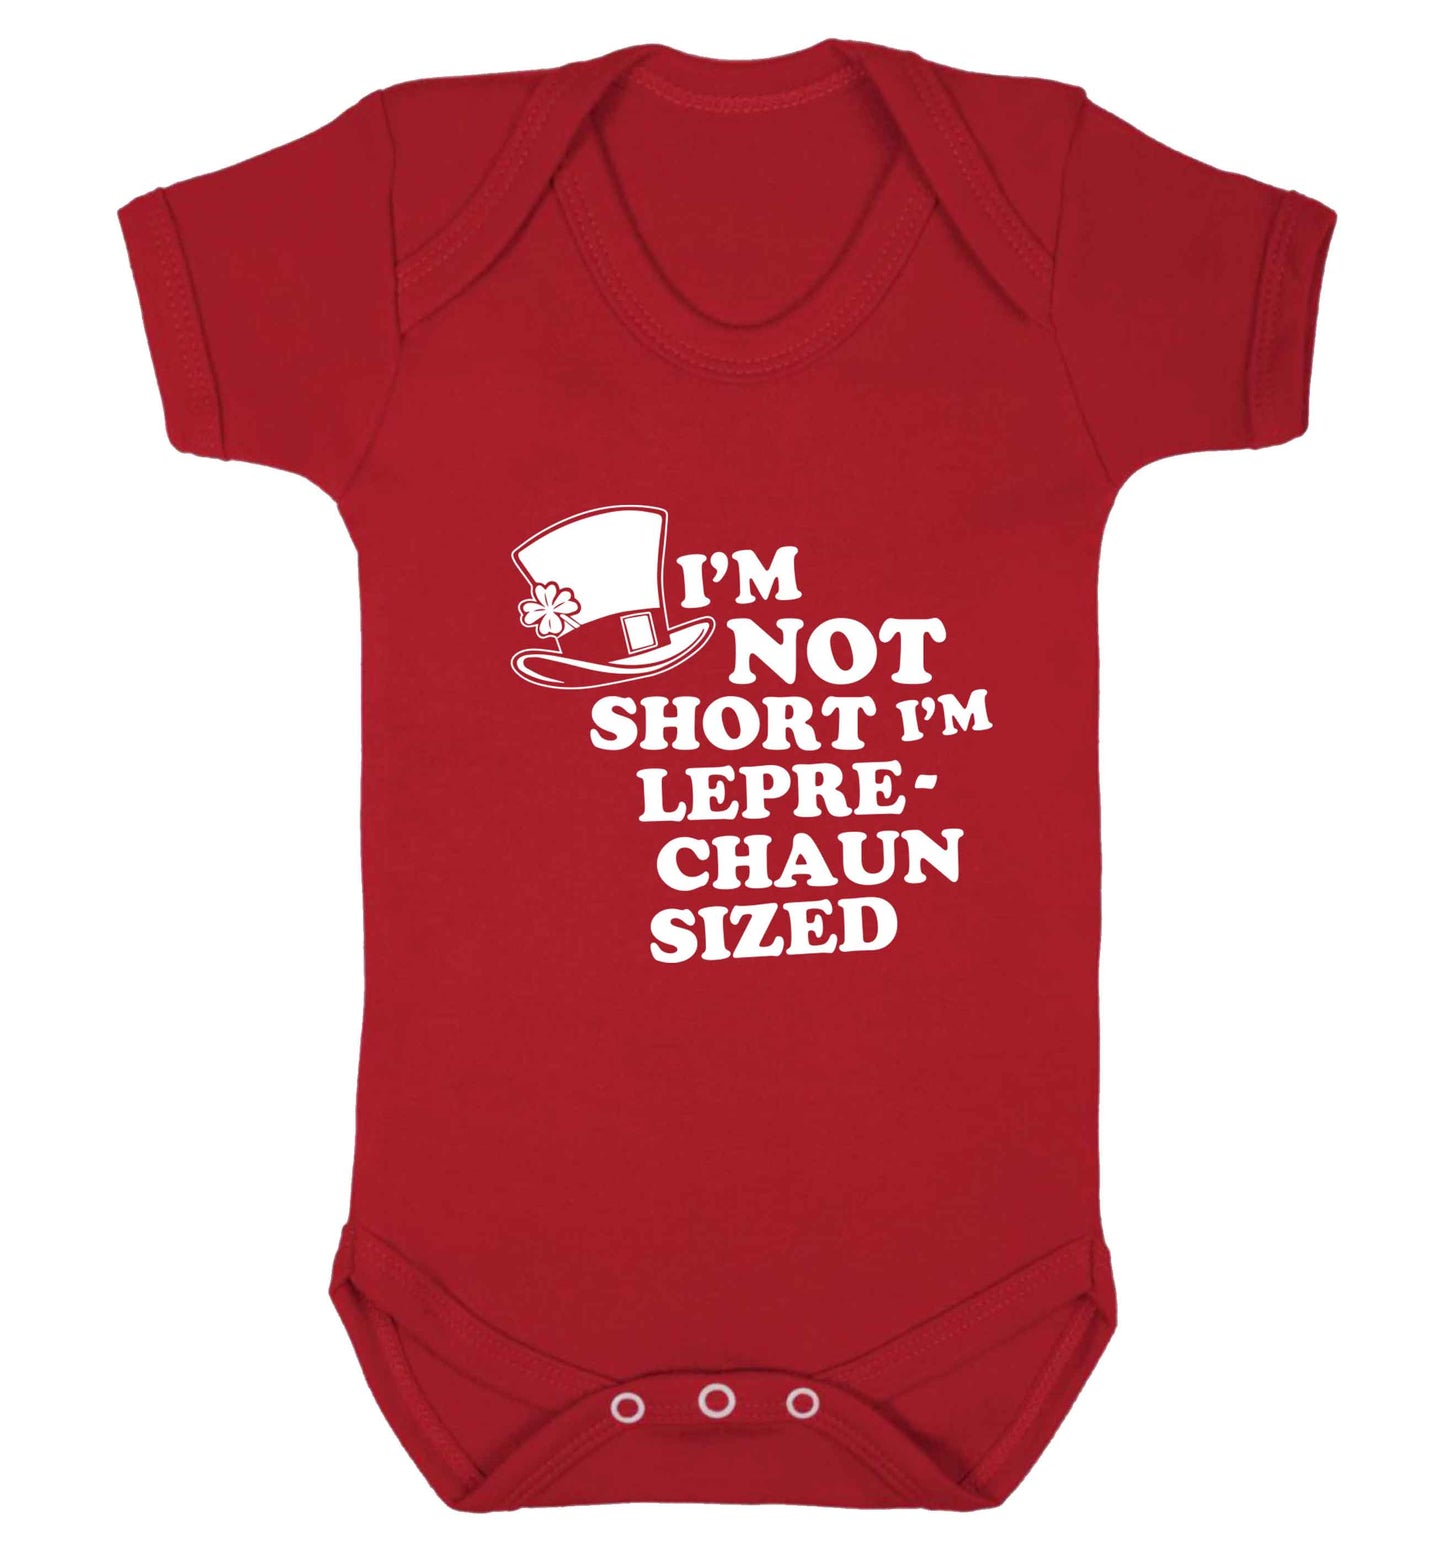 I'm not short I'm leprechaun sized baby vest red 18-24 months